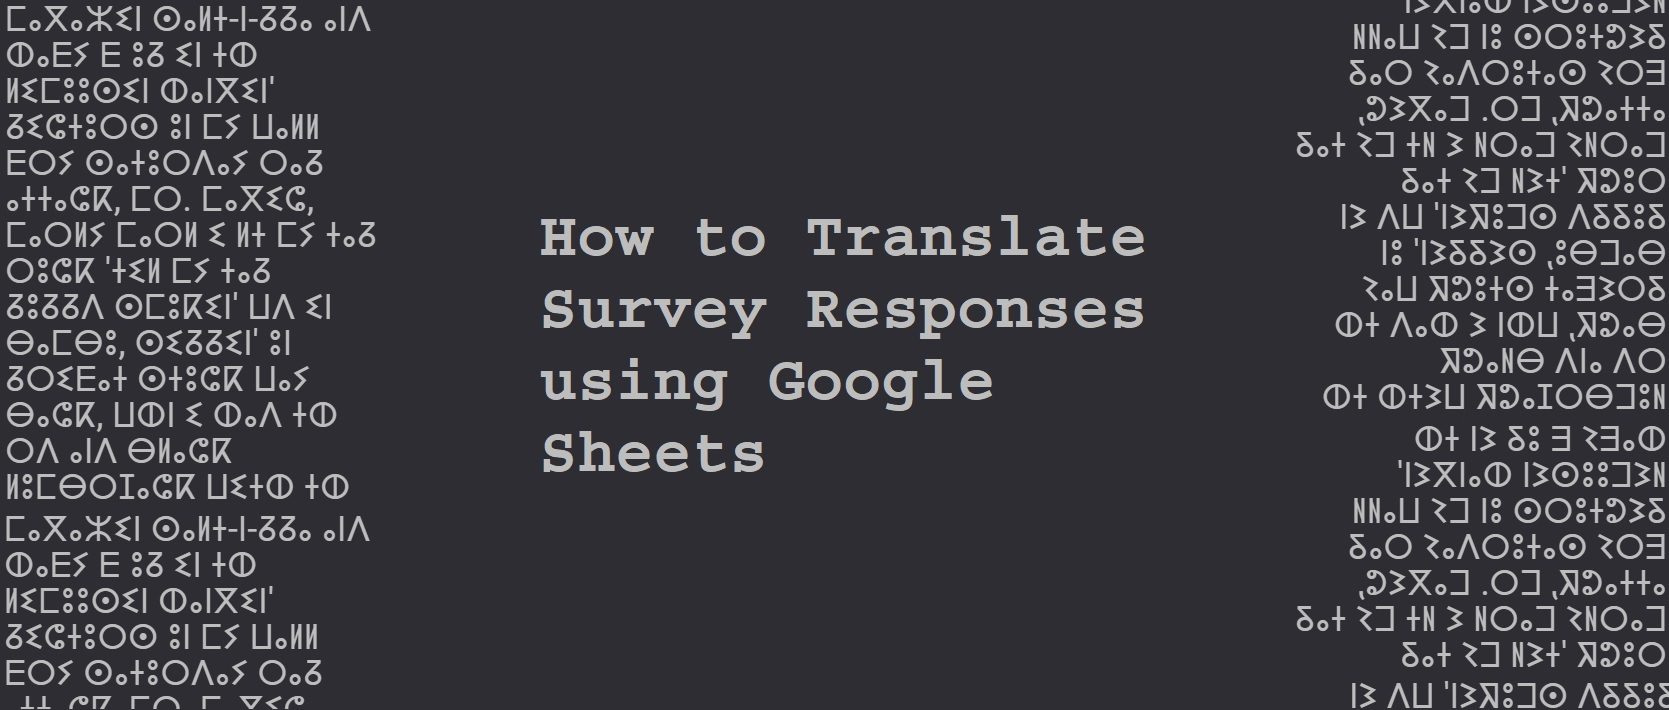 Traduction automatique de texte directement dans Google SHEETS